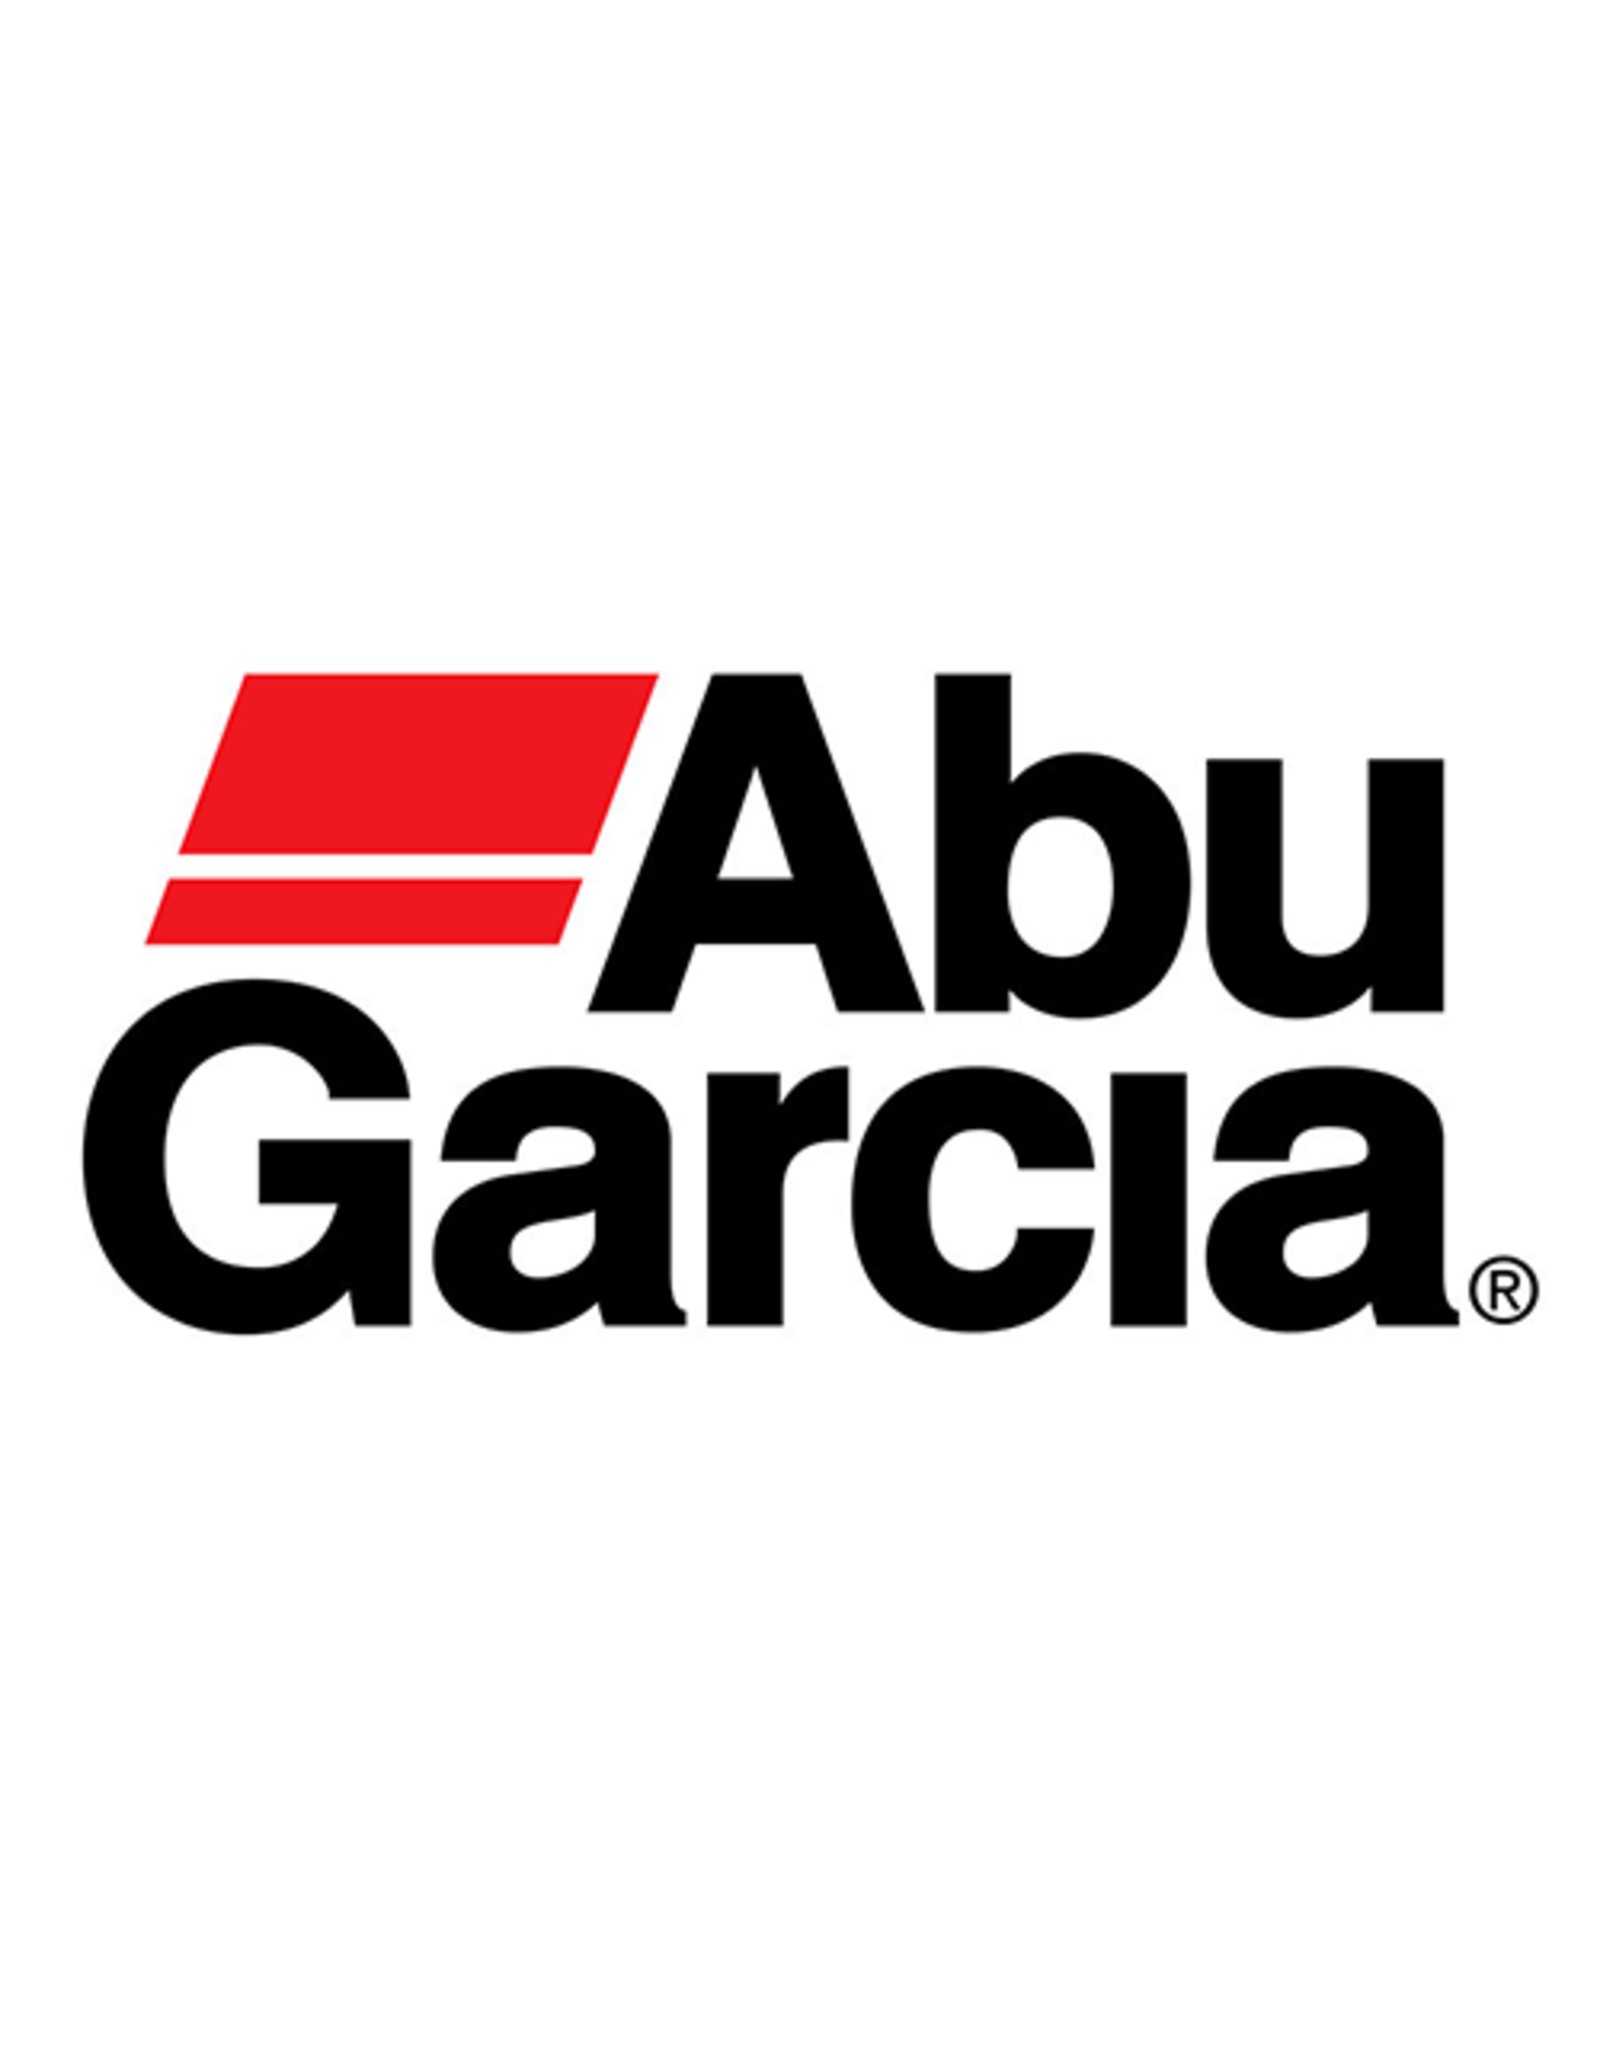 Abu Garcia 24328  WORM GEAR